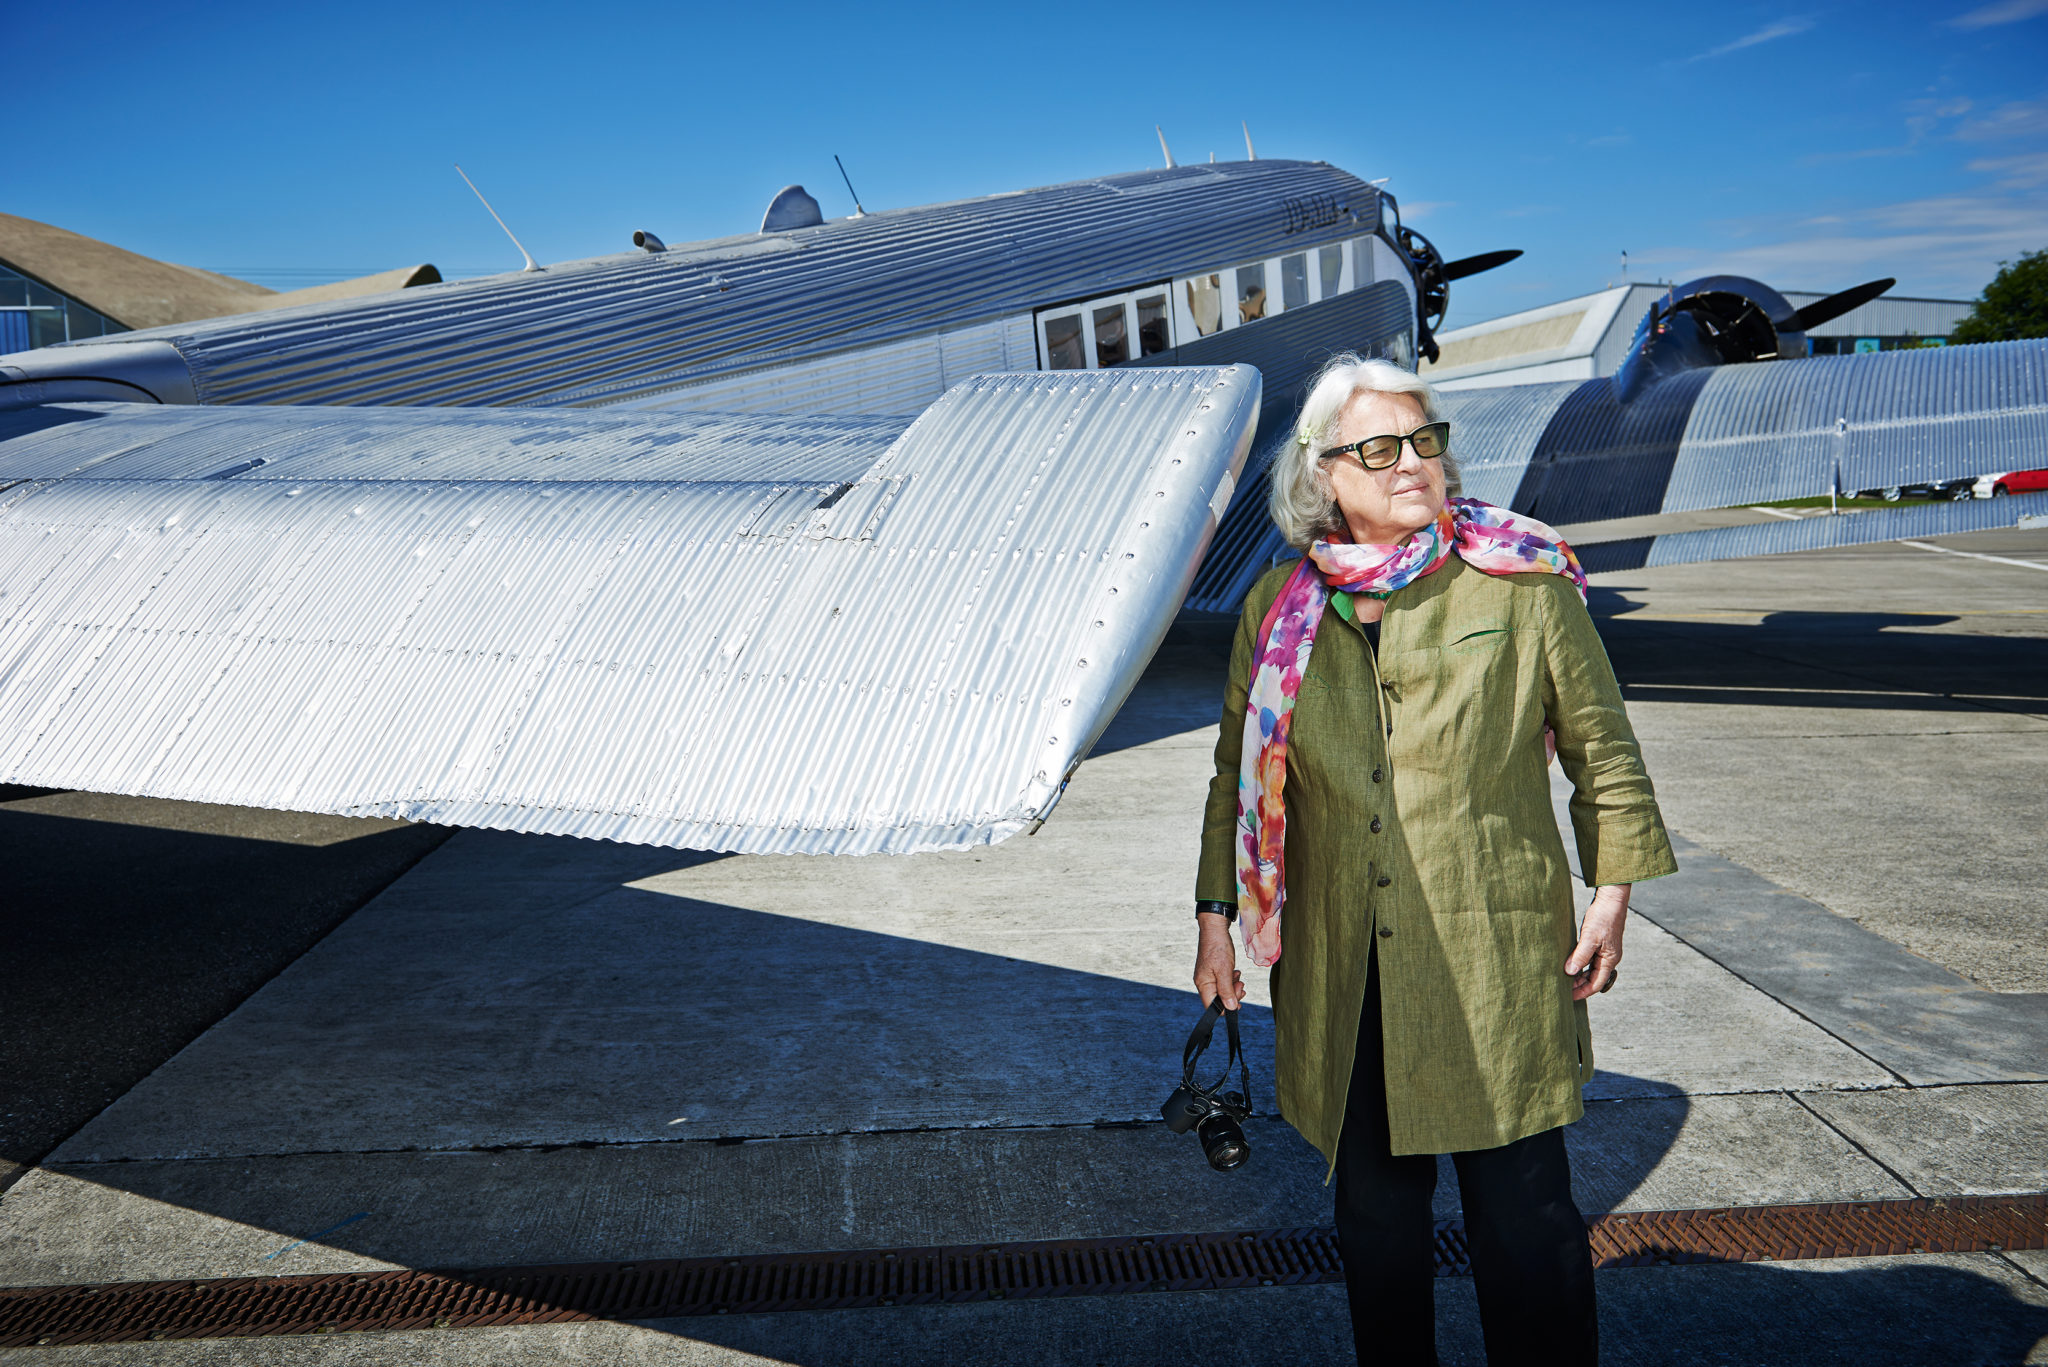 Eine ältere Dame mit auffällig dicker Brille und einem bunten Schal steht vor einem silbernen Flugzeug und schaut nach rechts.